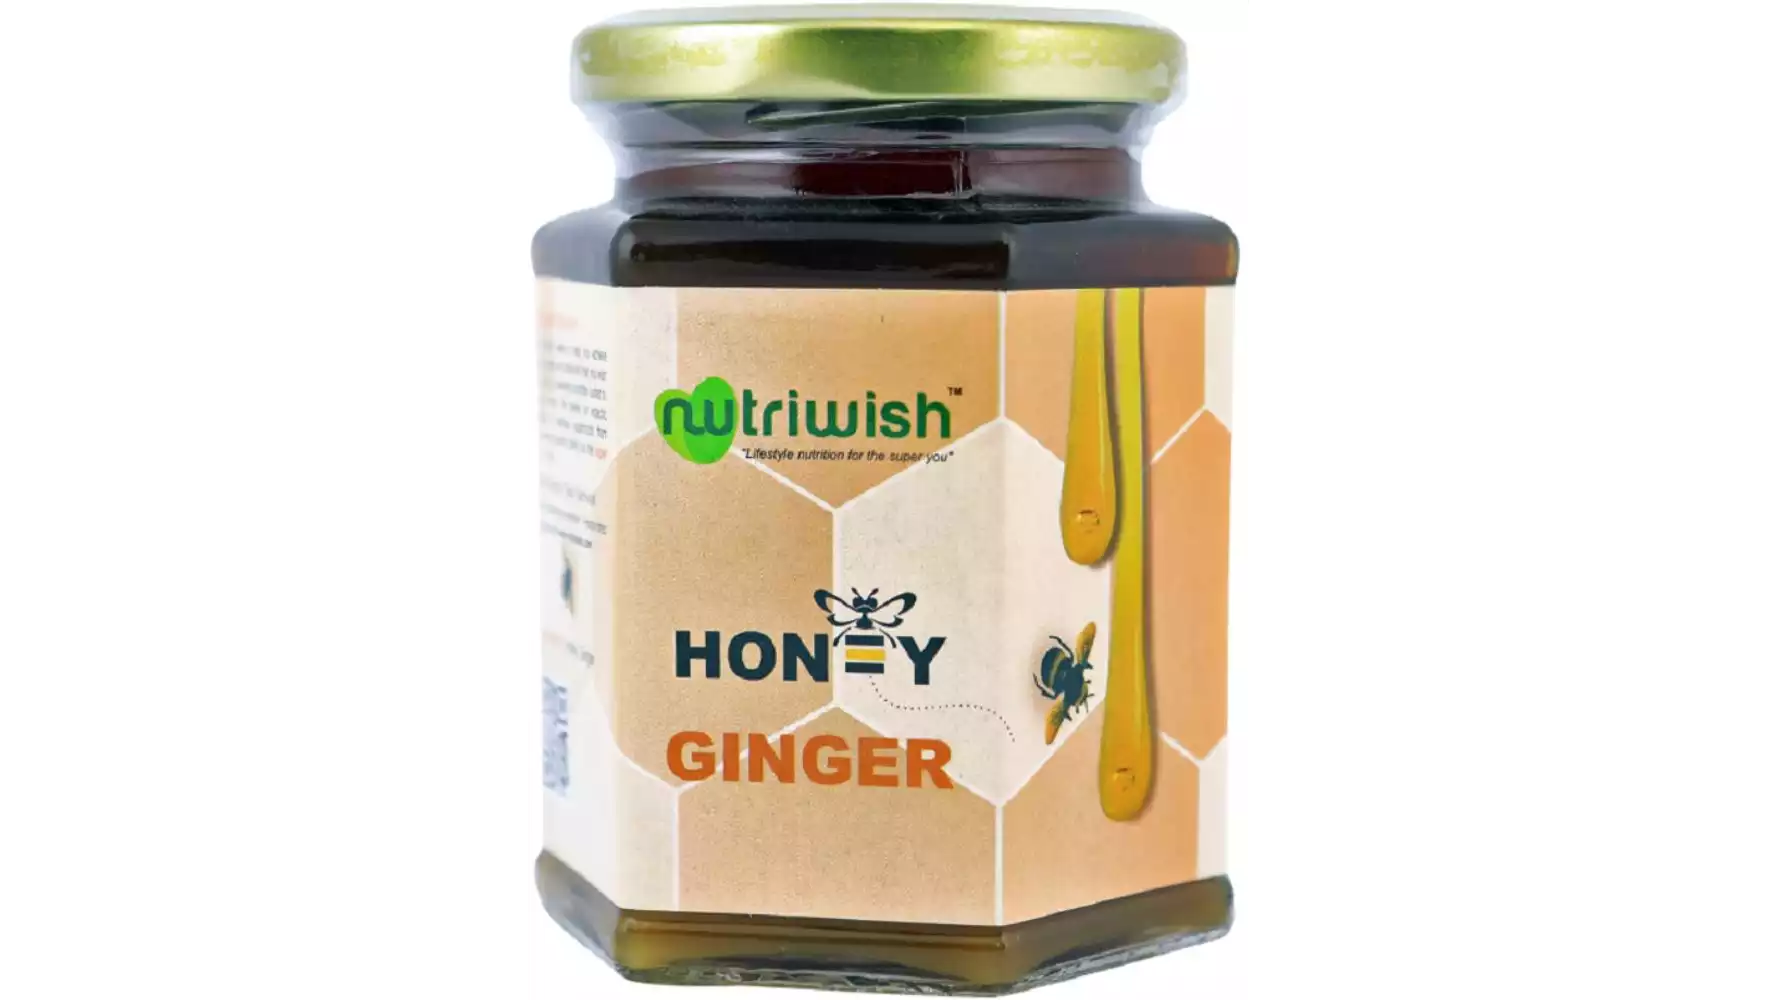 Nutriwish Ginger Honey (350g)